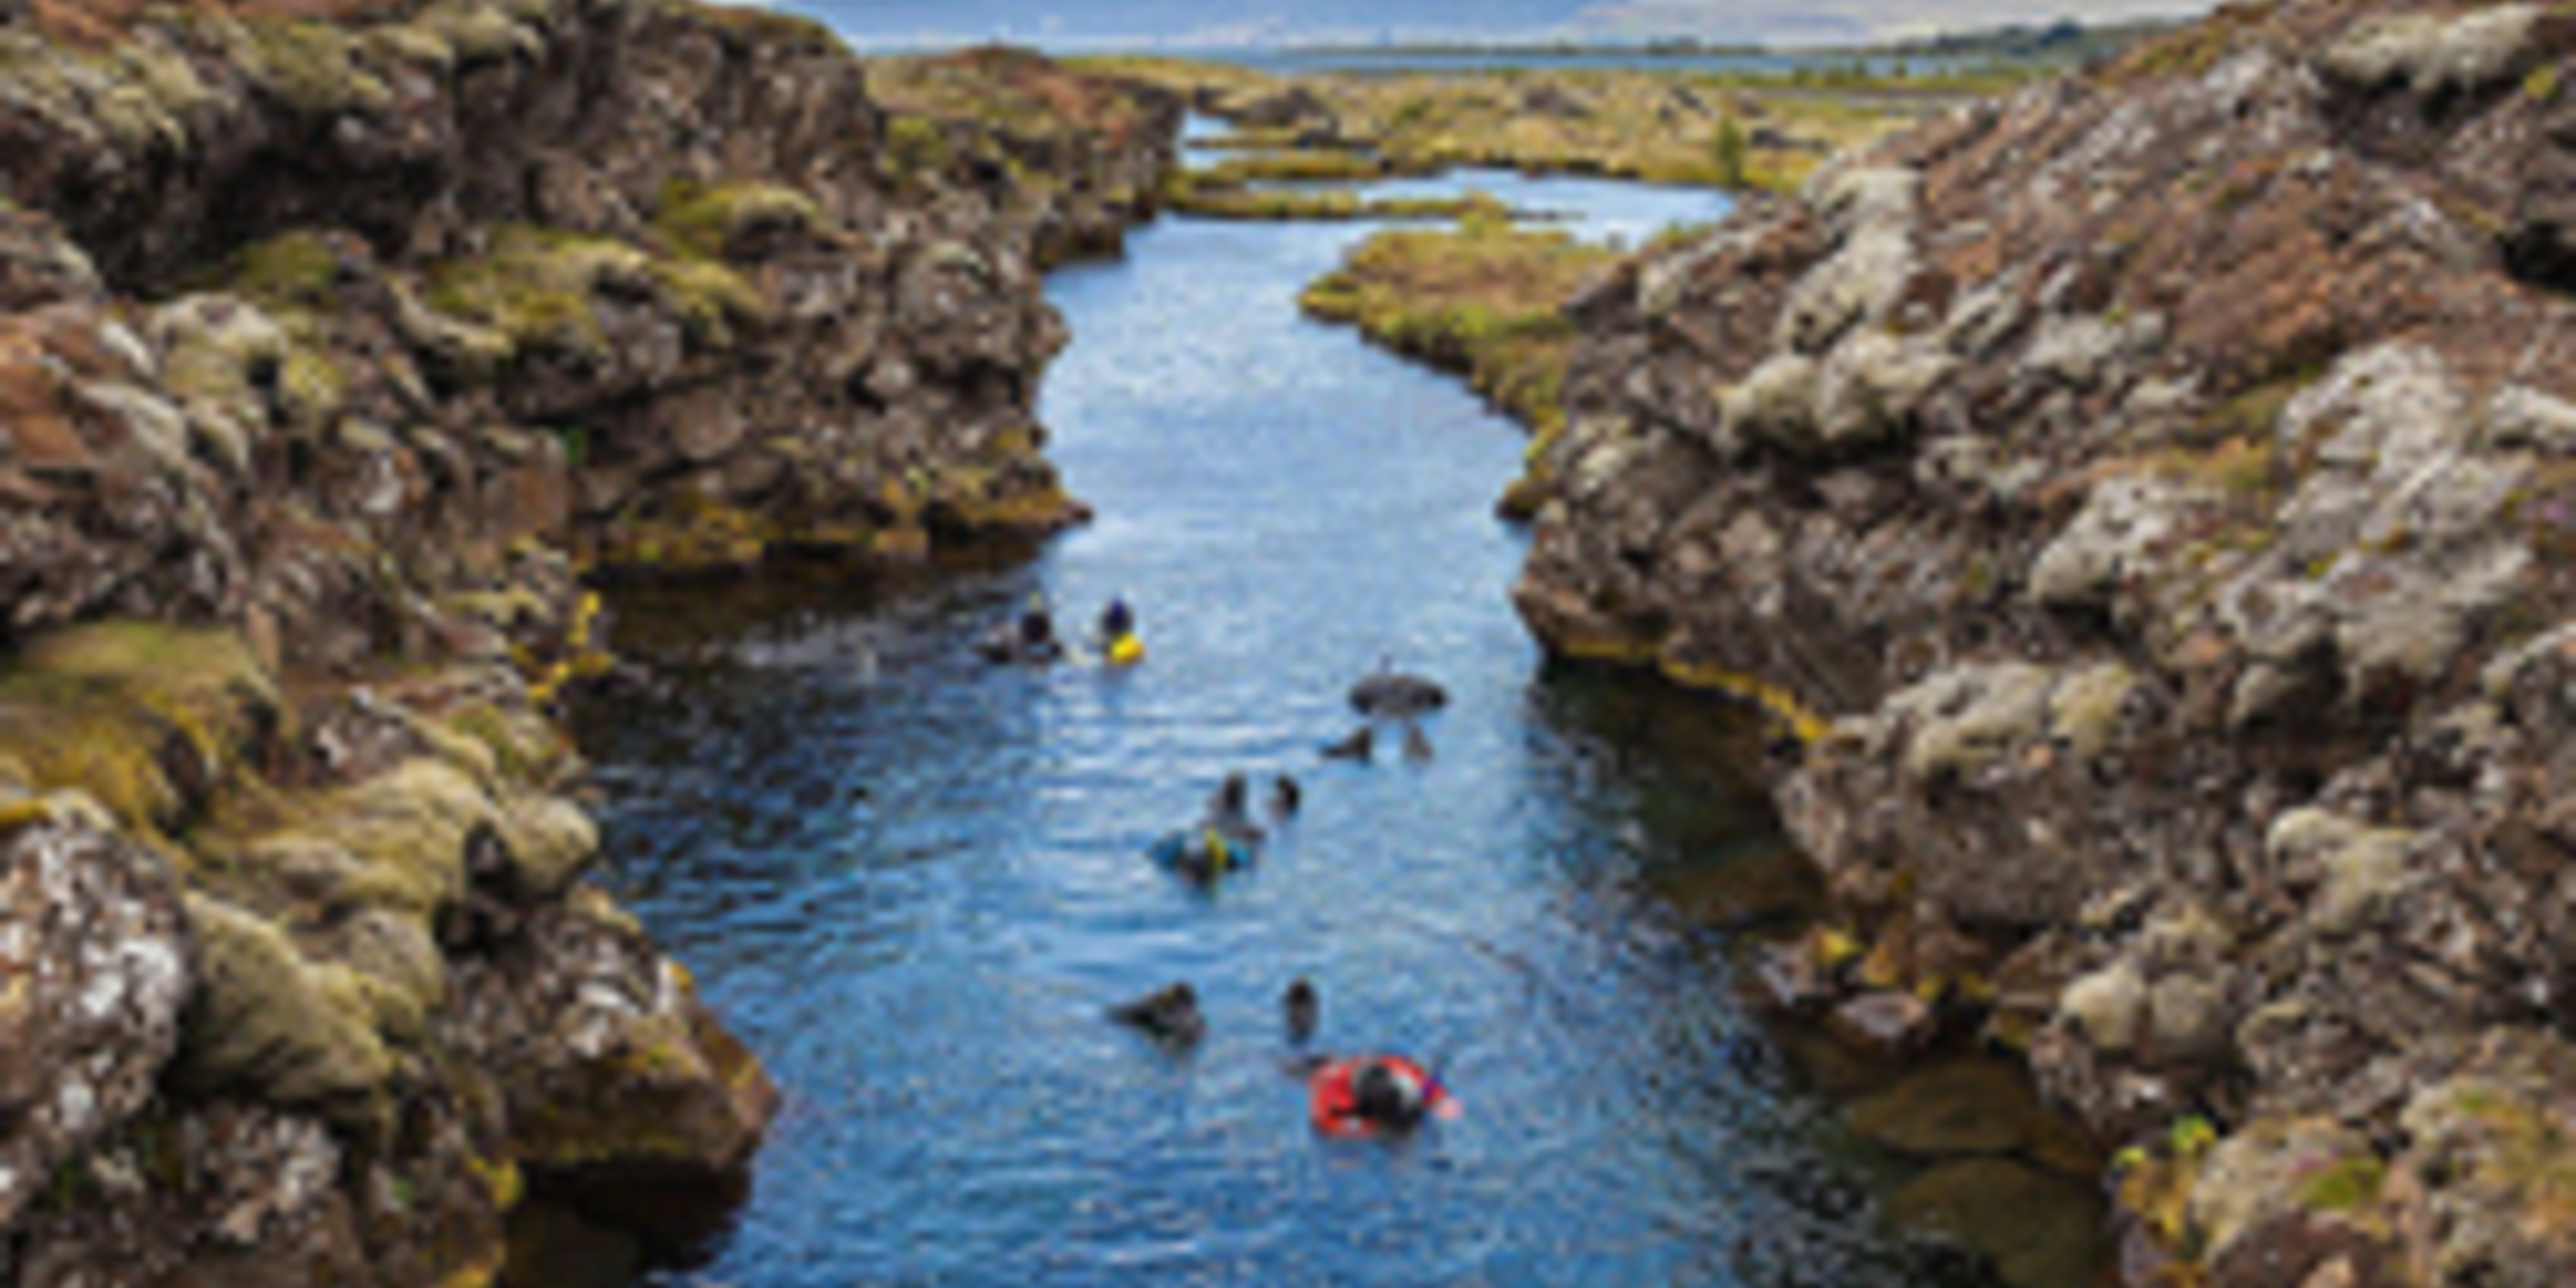  Cañón_Silfra,_Parque_Nacional_de_Þingvellir,_Suðurland,_Islandia